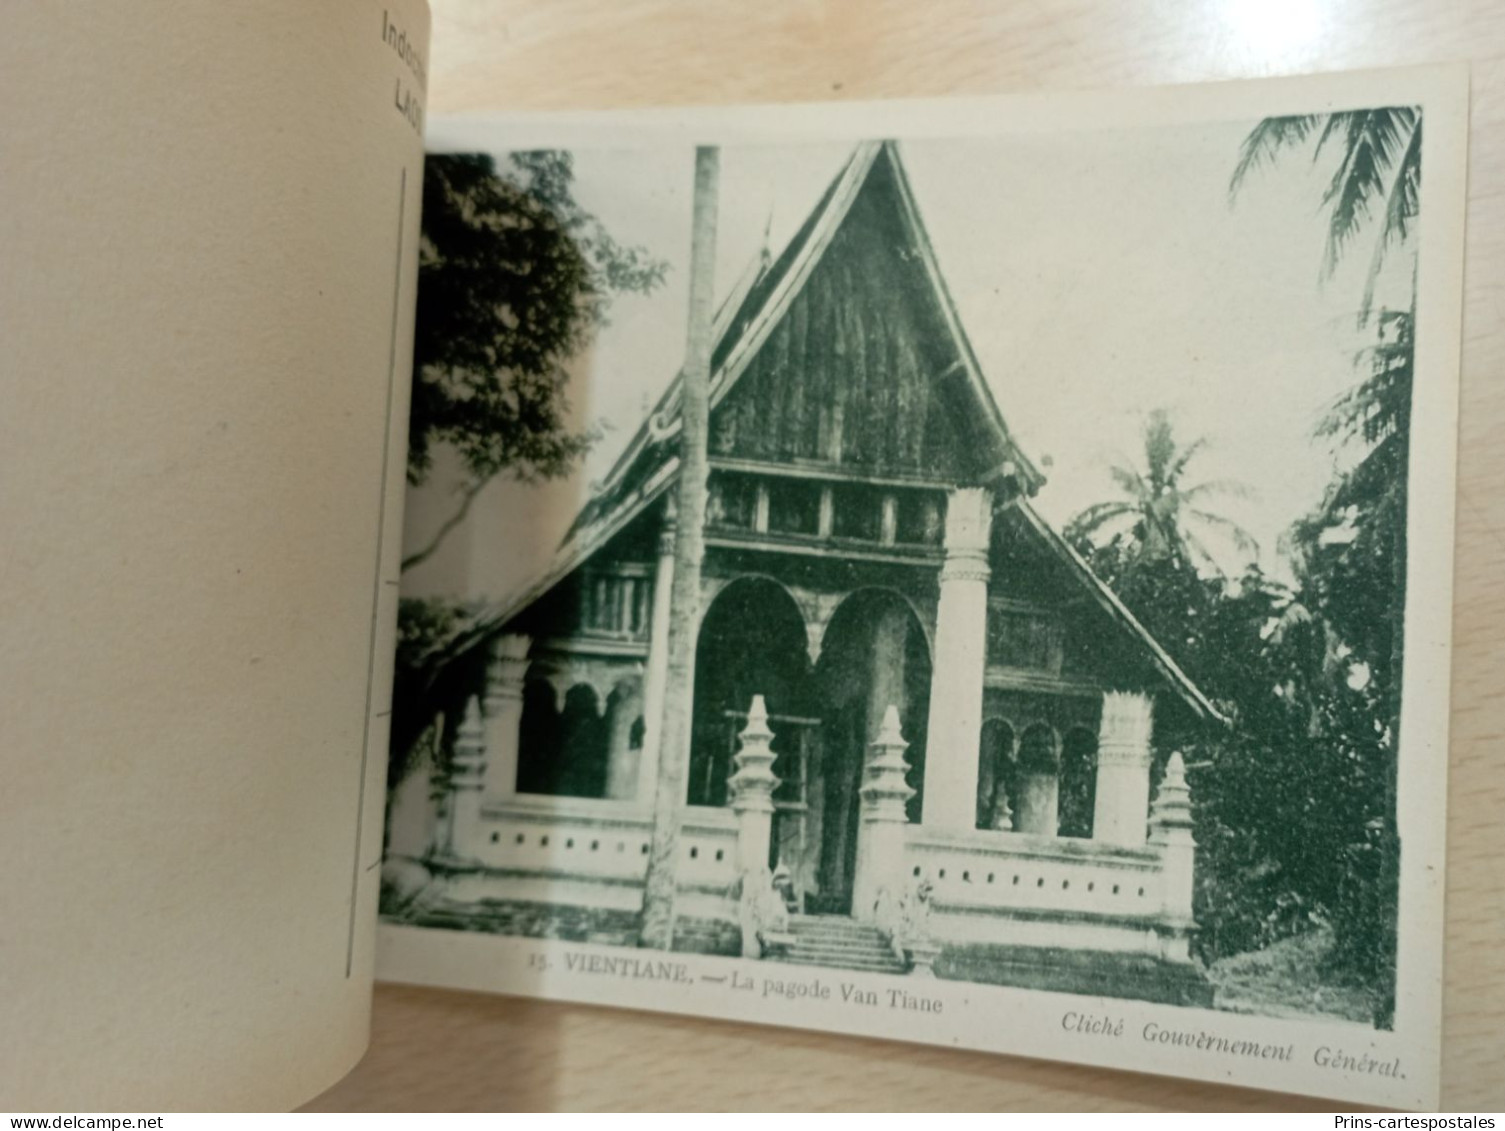 Carnet 20 cartes du Laos Indochine - Albums des colonies édités par la maison d'Art Colonial